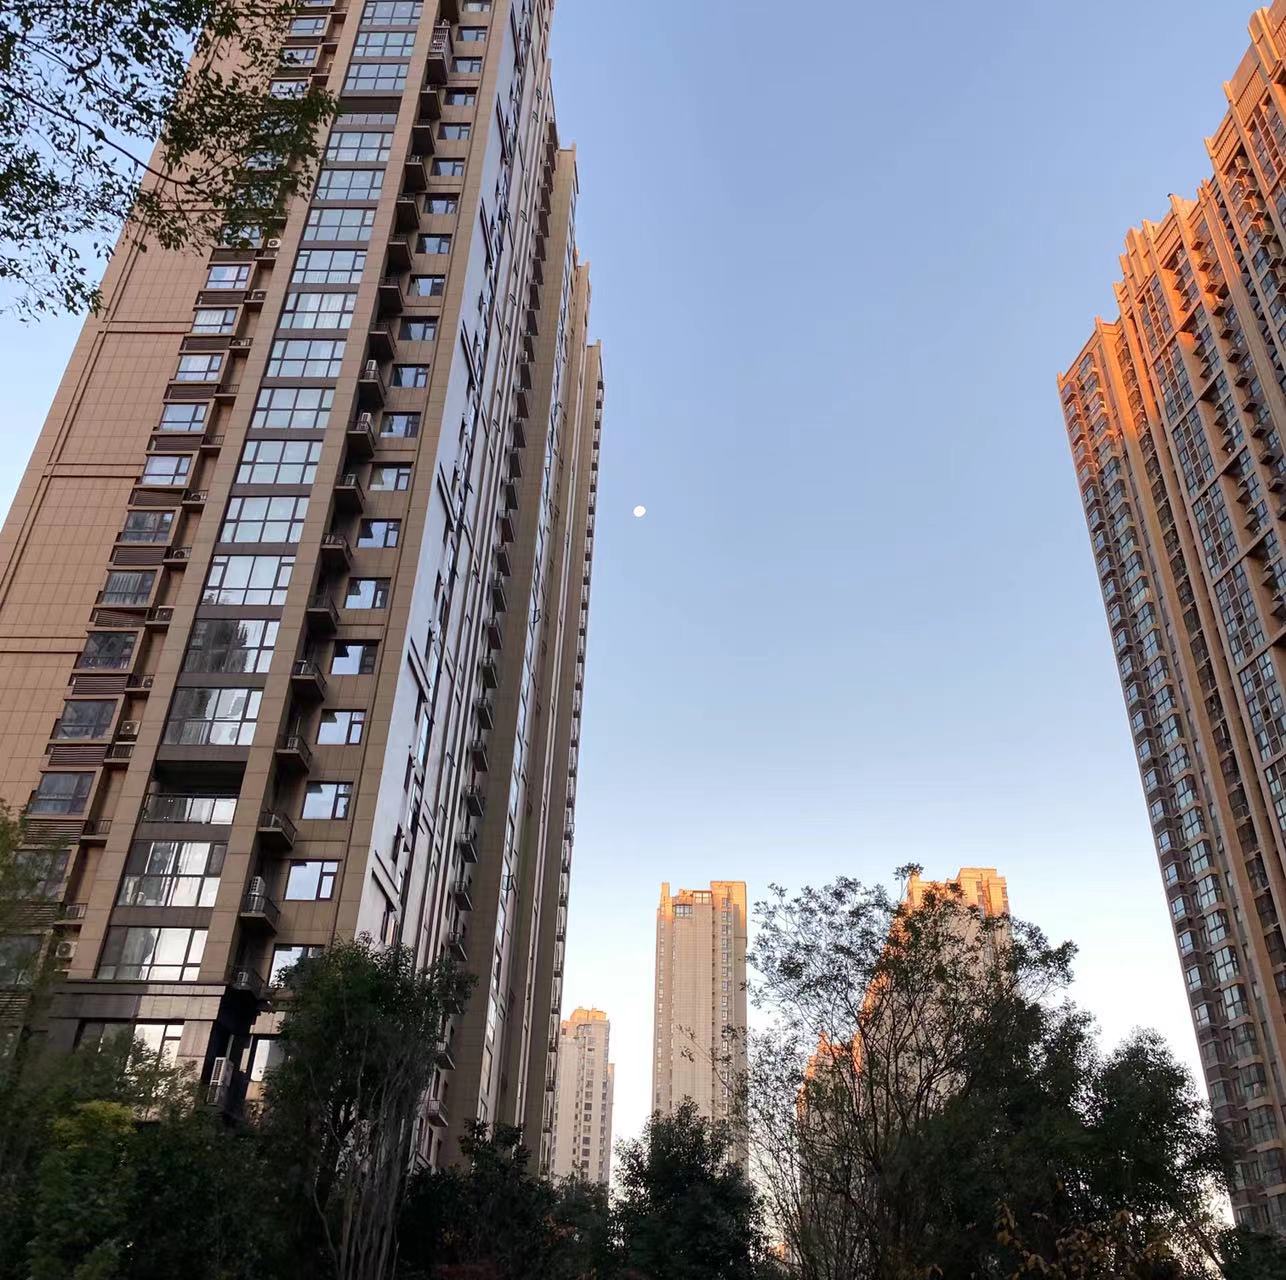 长沙高新区将用三年时间改造31个小区676栋房屋 惠及3.34万户居民